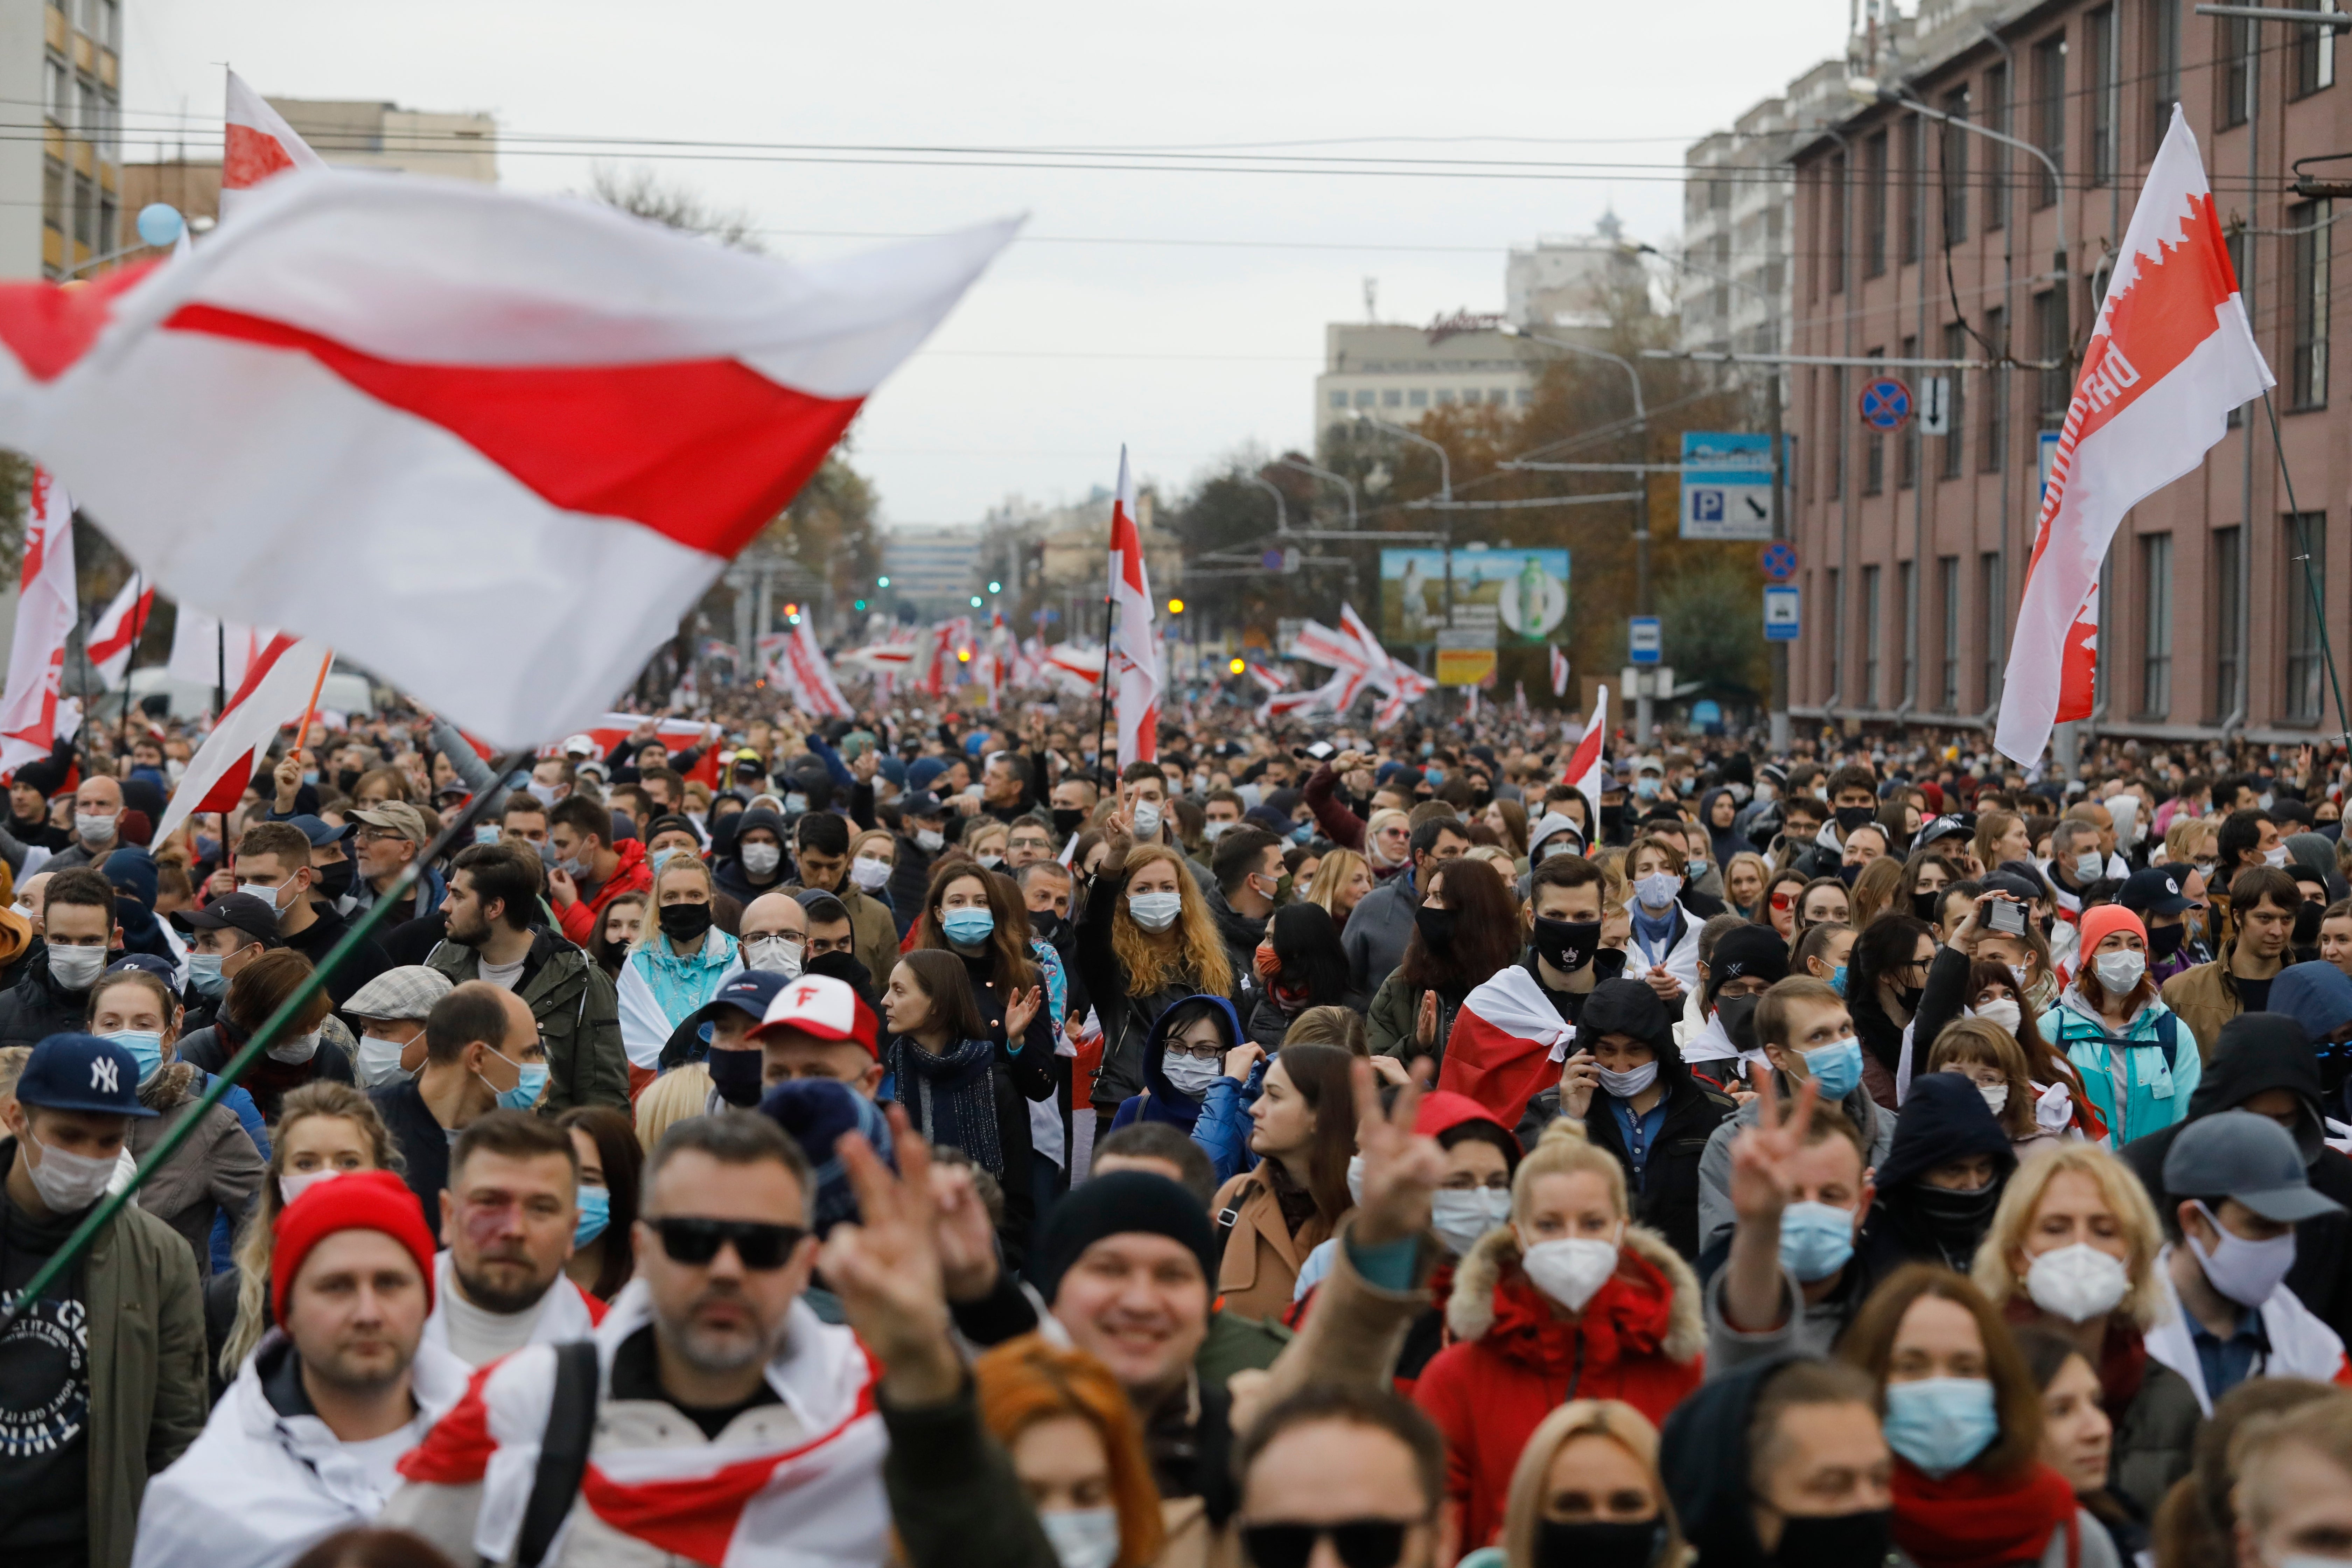 Thousands protest as Belarus leader faces demands deadline leader